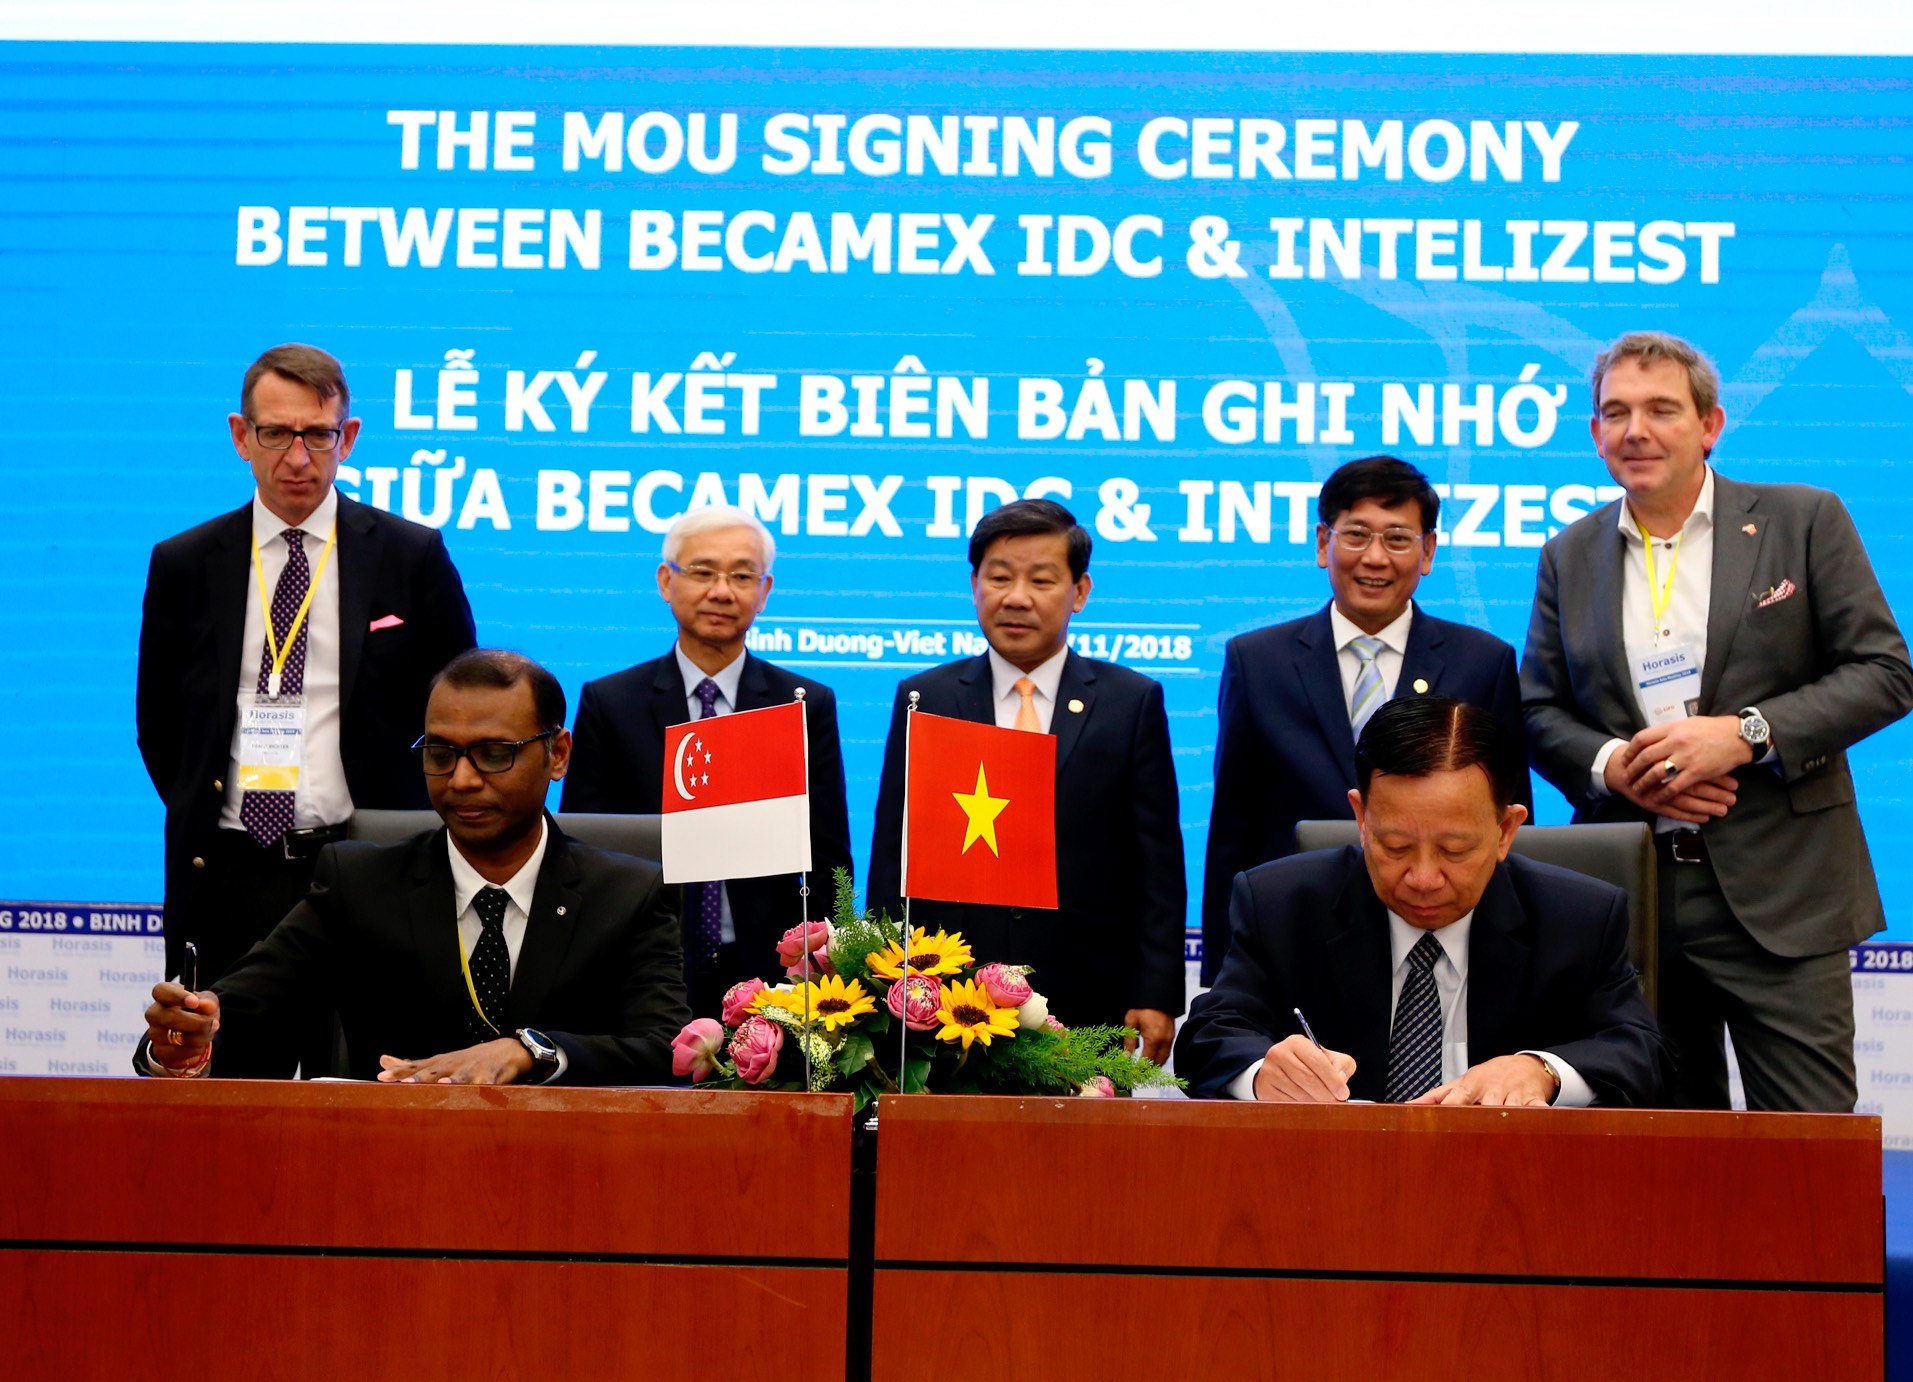 Nhiều thỏa thuận hợp tác được ký kết tại Horasis - Bình Dương 2018 giữa Becamex IDC với các đối tác nước ngoài (ảnh tư liệu)